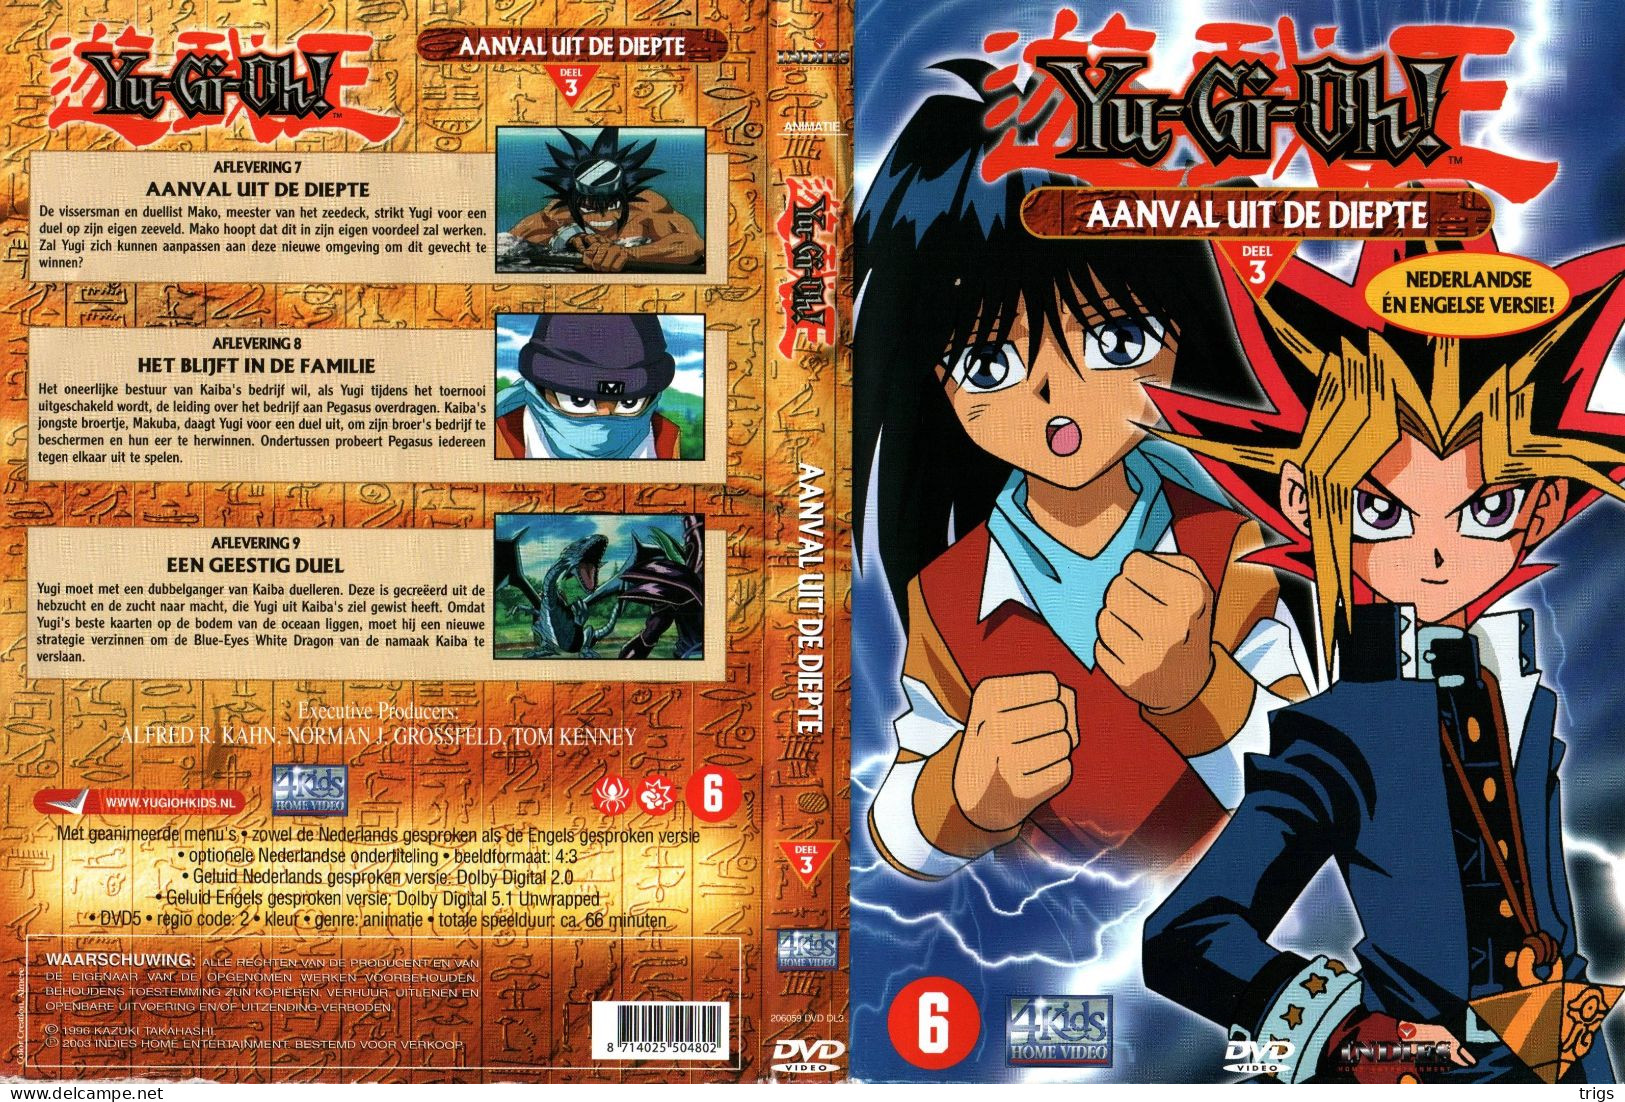 DVD - Yu-Gi-Oh! Deel 3: Aanval Uit De Diepte - Animation